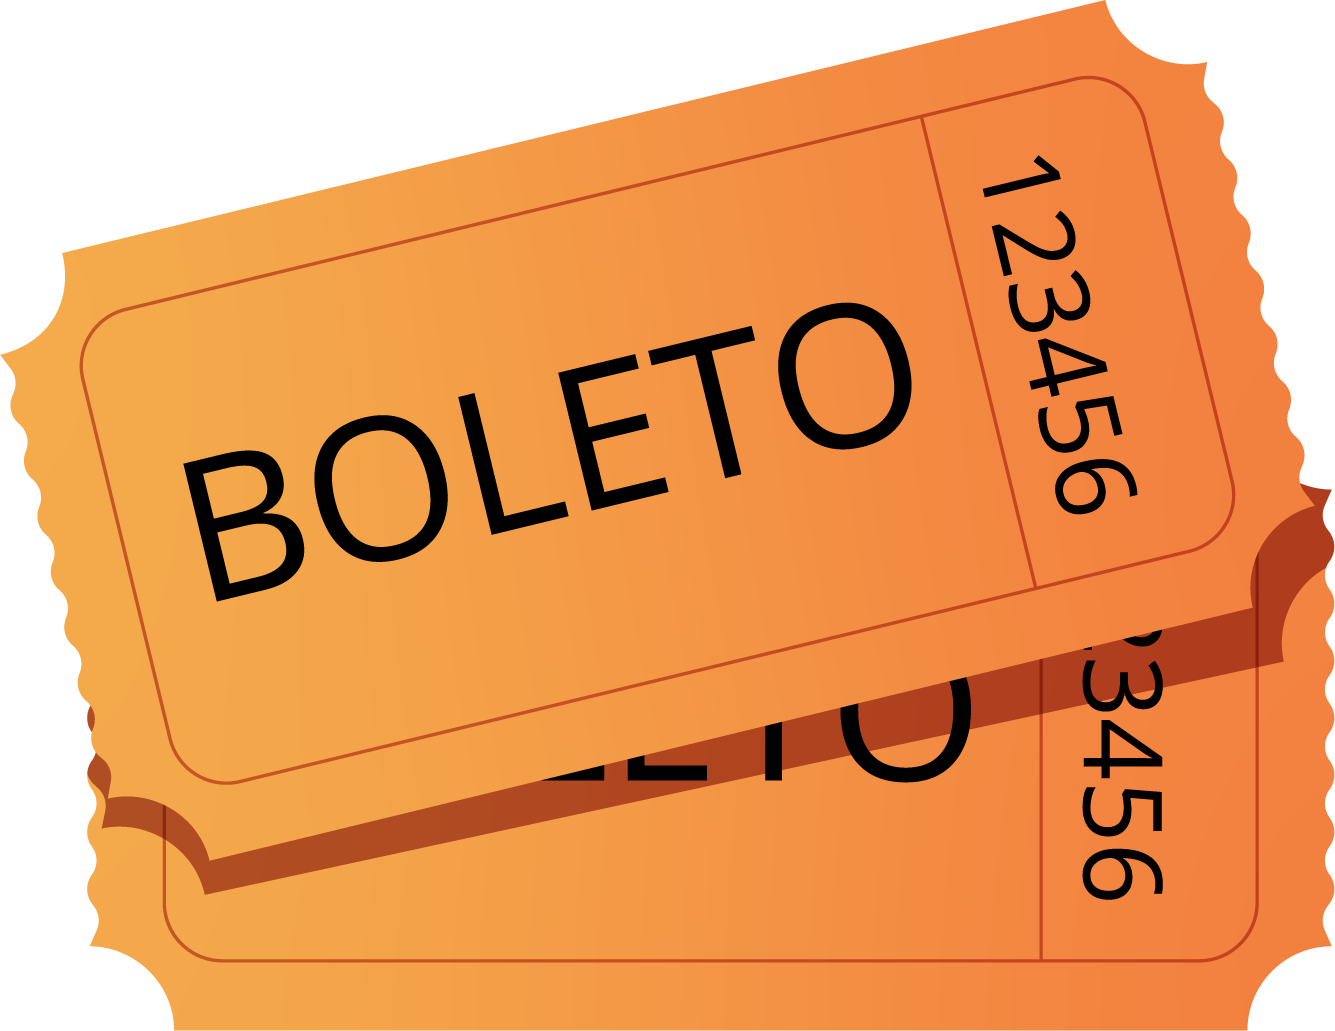 2 boletos rectangulares de color anaranjado brillante. Cada uno tiene la palabra "boleto" en el medio y el número 123456 en orientación vertical.